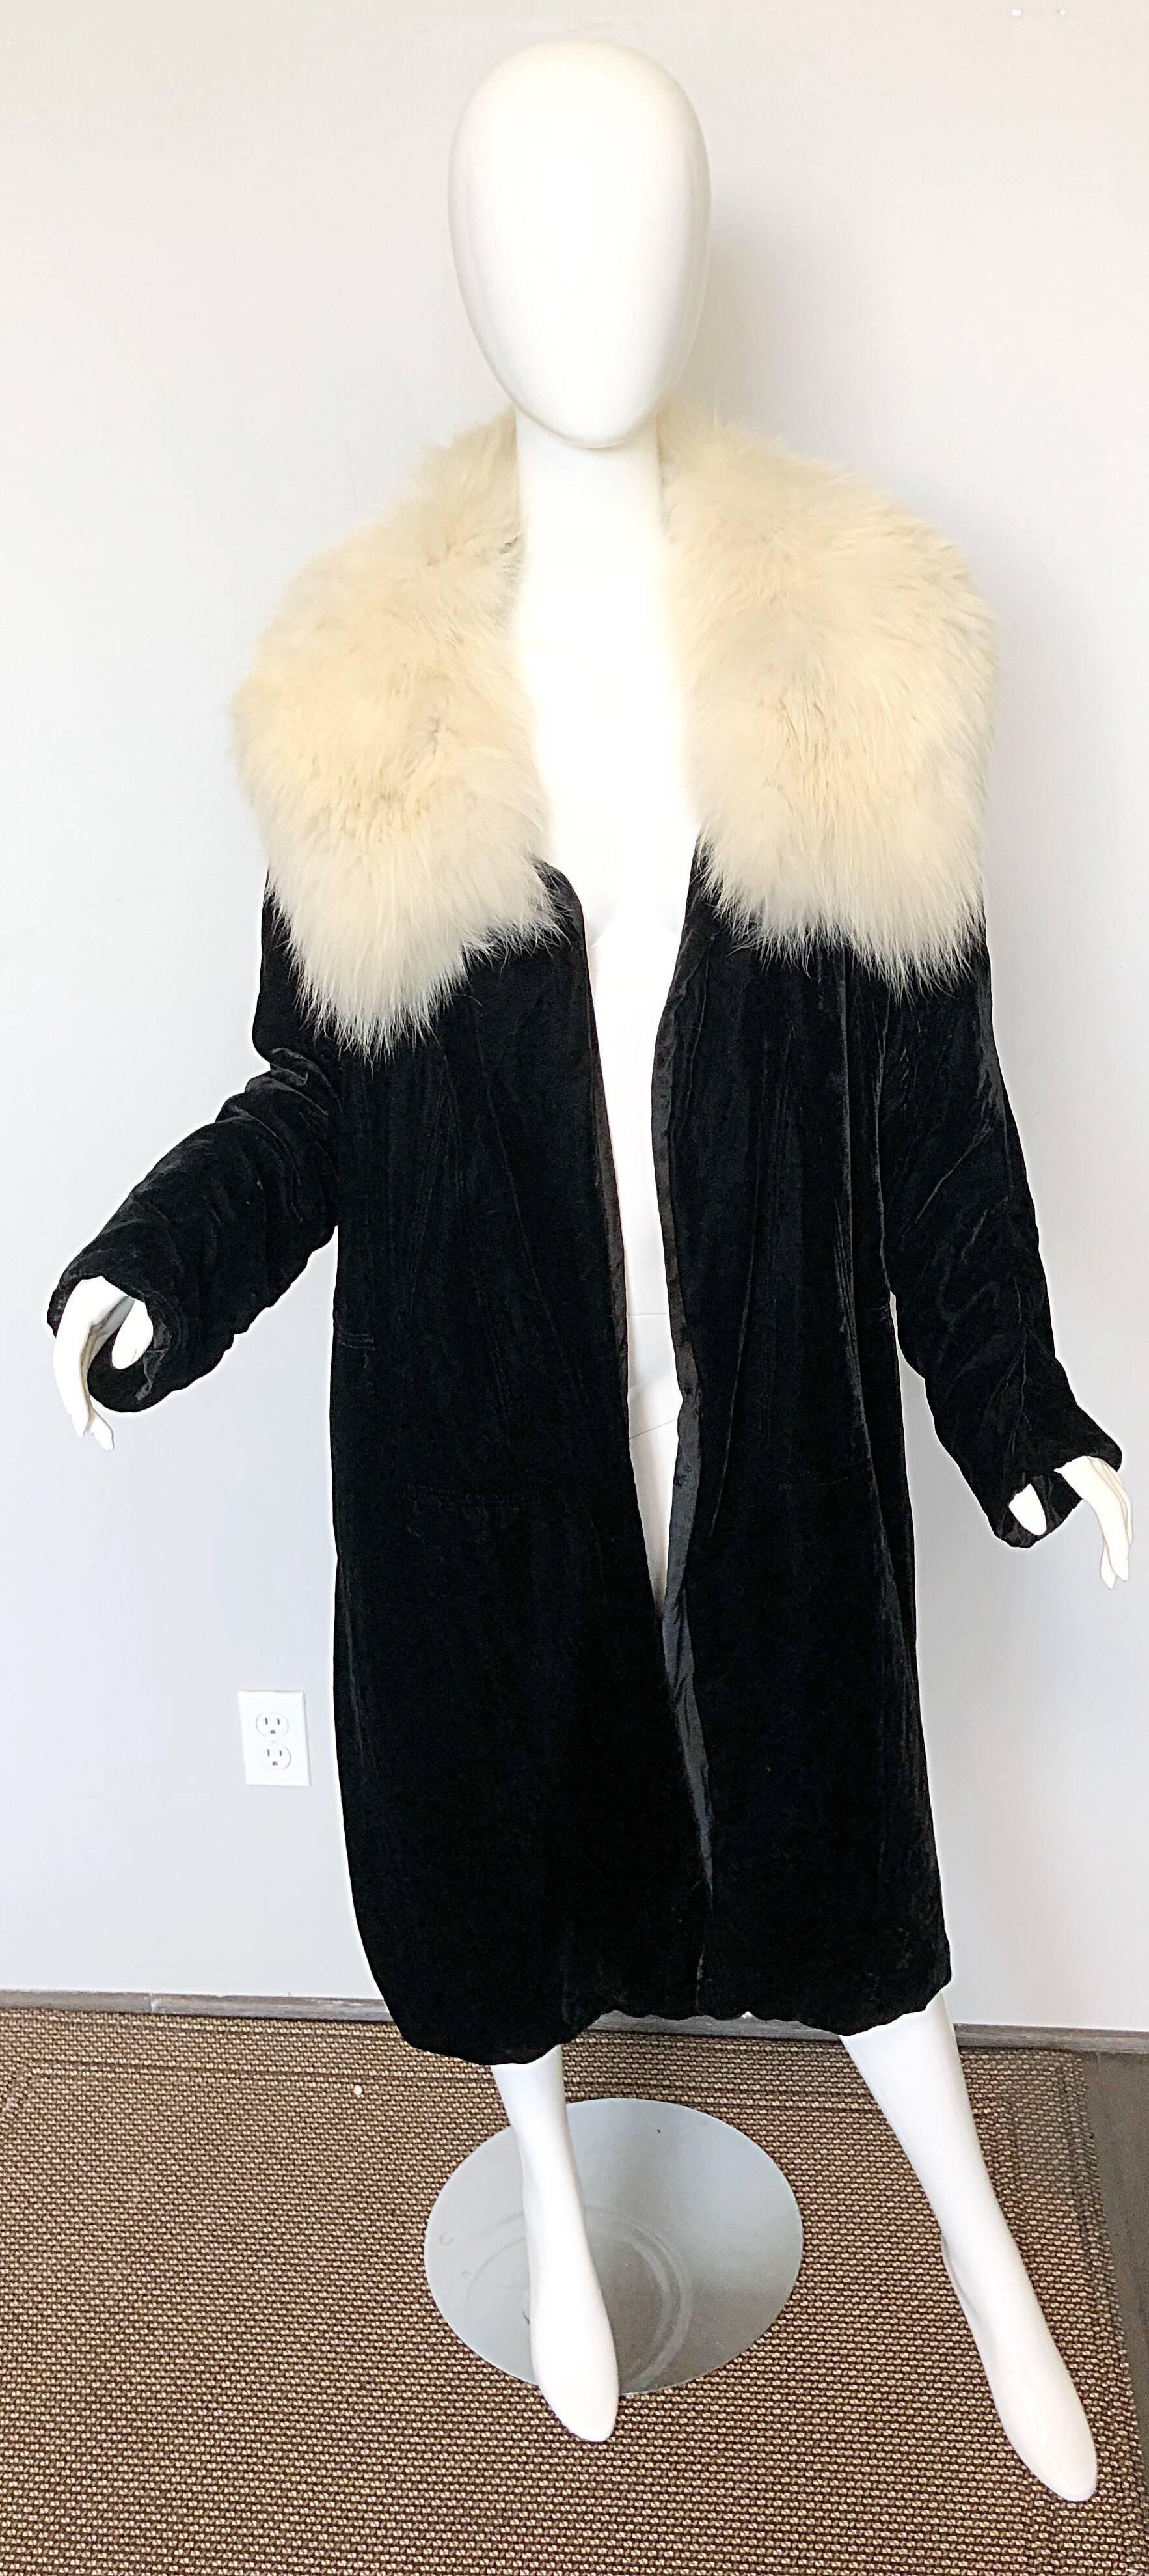 Superbe et rare manteau d'opéra en velours de soie noir HATTIE CARNEGIE pour I MAGNIN des années 1930, avec col surdimensionné en fourrure de renard blanc ! Le velours de soie le plus doux et le plus luxueux et la fourrure de renard blanc de haute